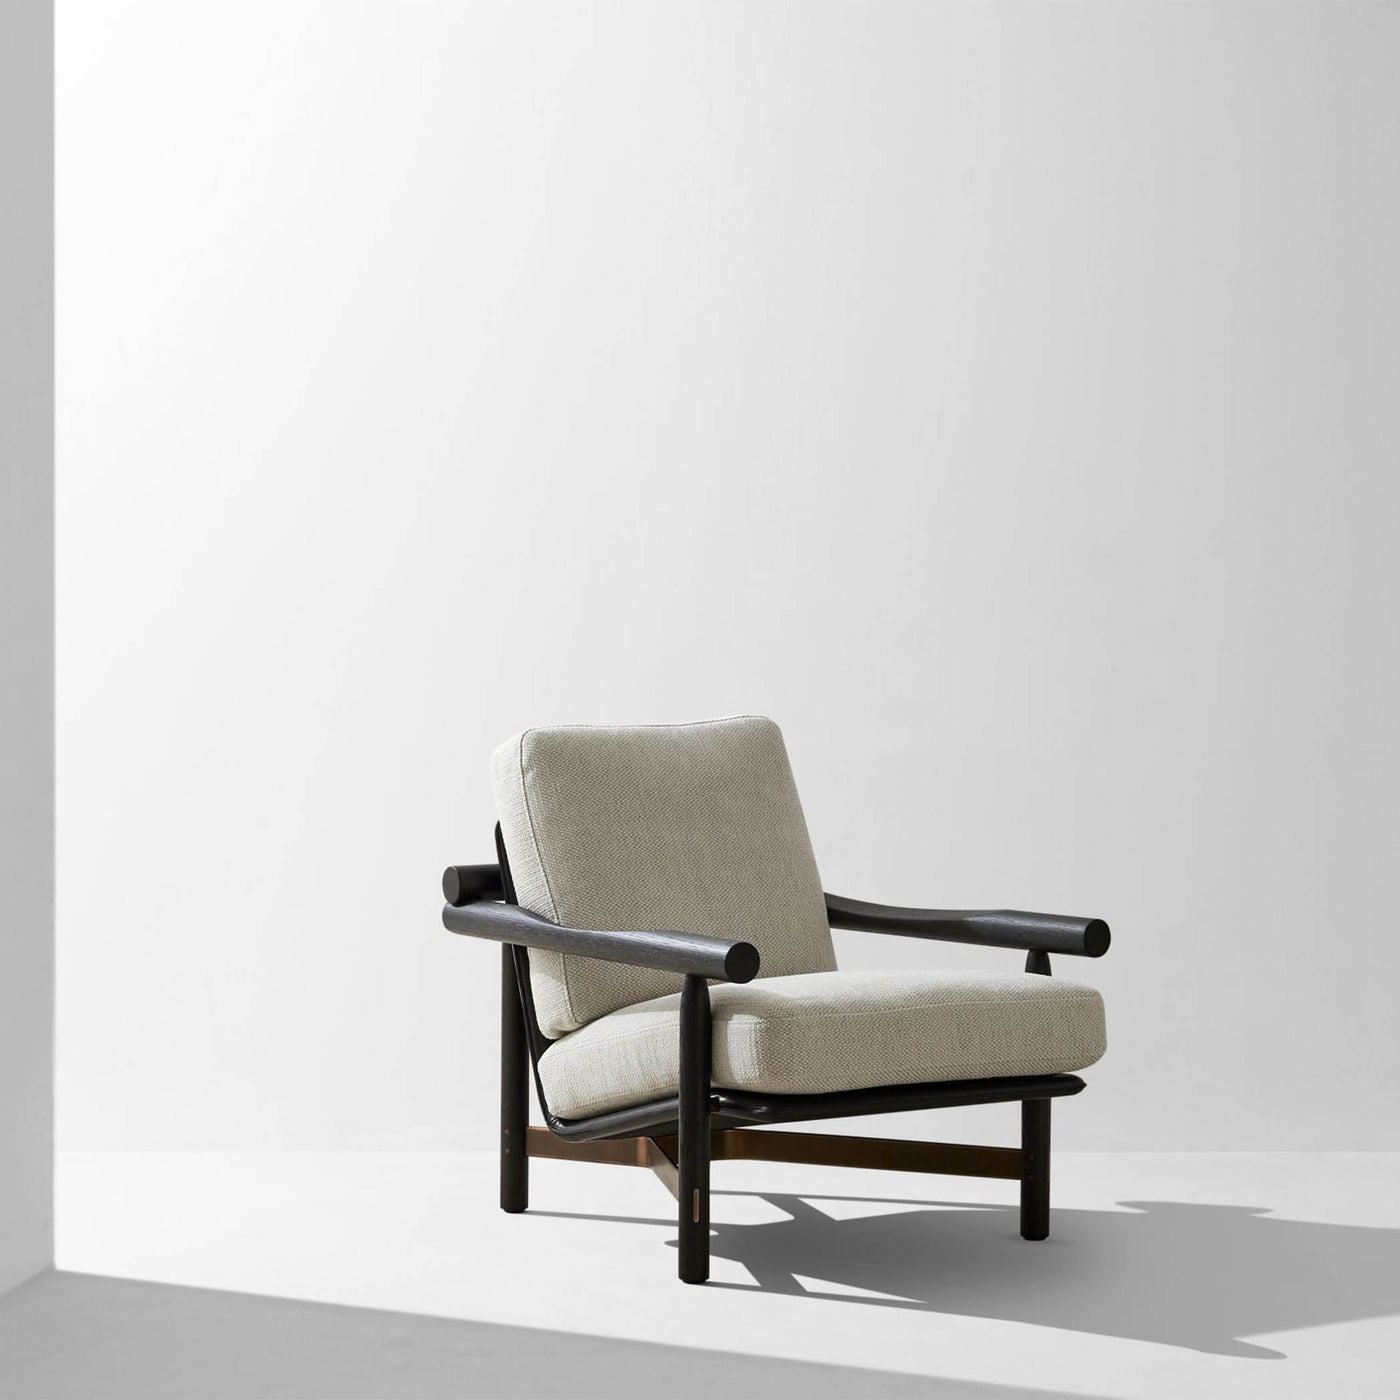 Découvrez le fauteuil Stilt de District Eight : un équilibre parfait entre clarté discrète et élégance intuitive, avec des coussins enveloppants et des finitions en acier pour un confort et une modernité incomparables